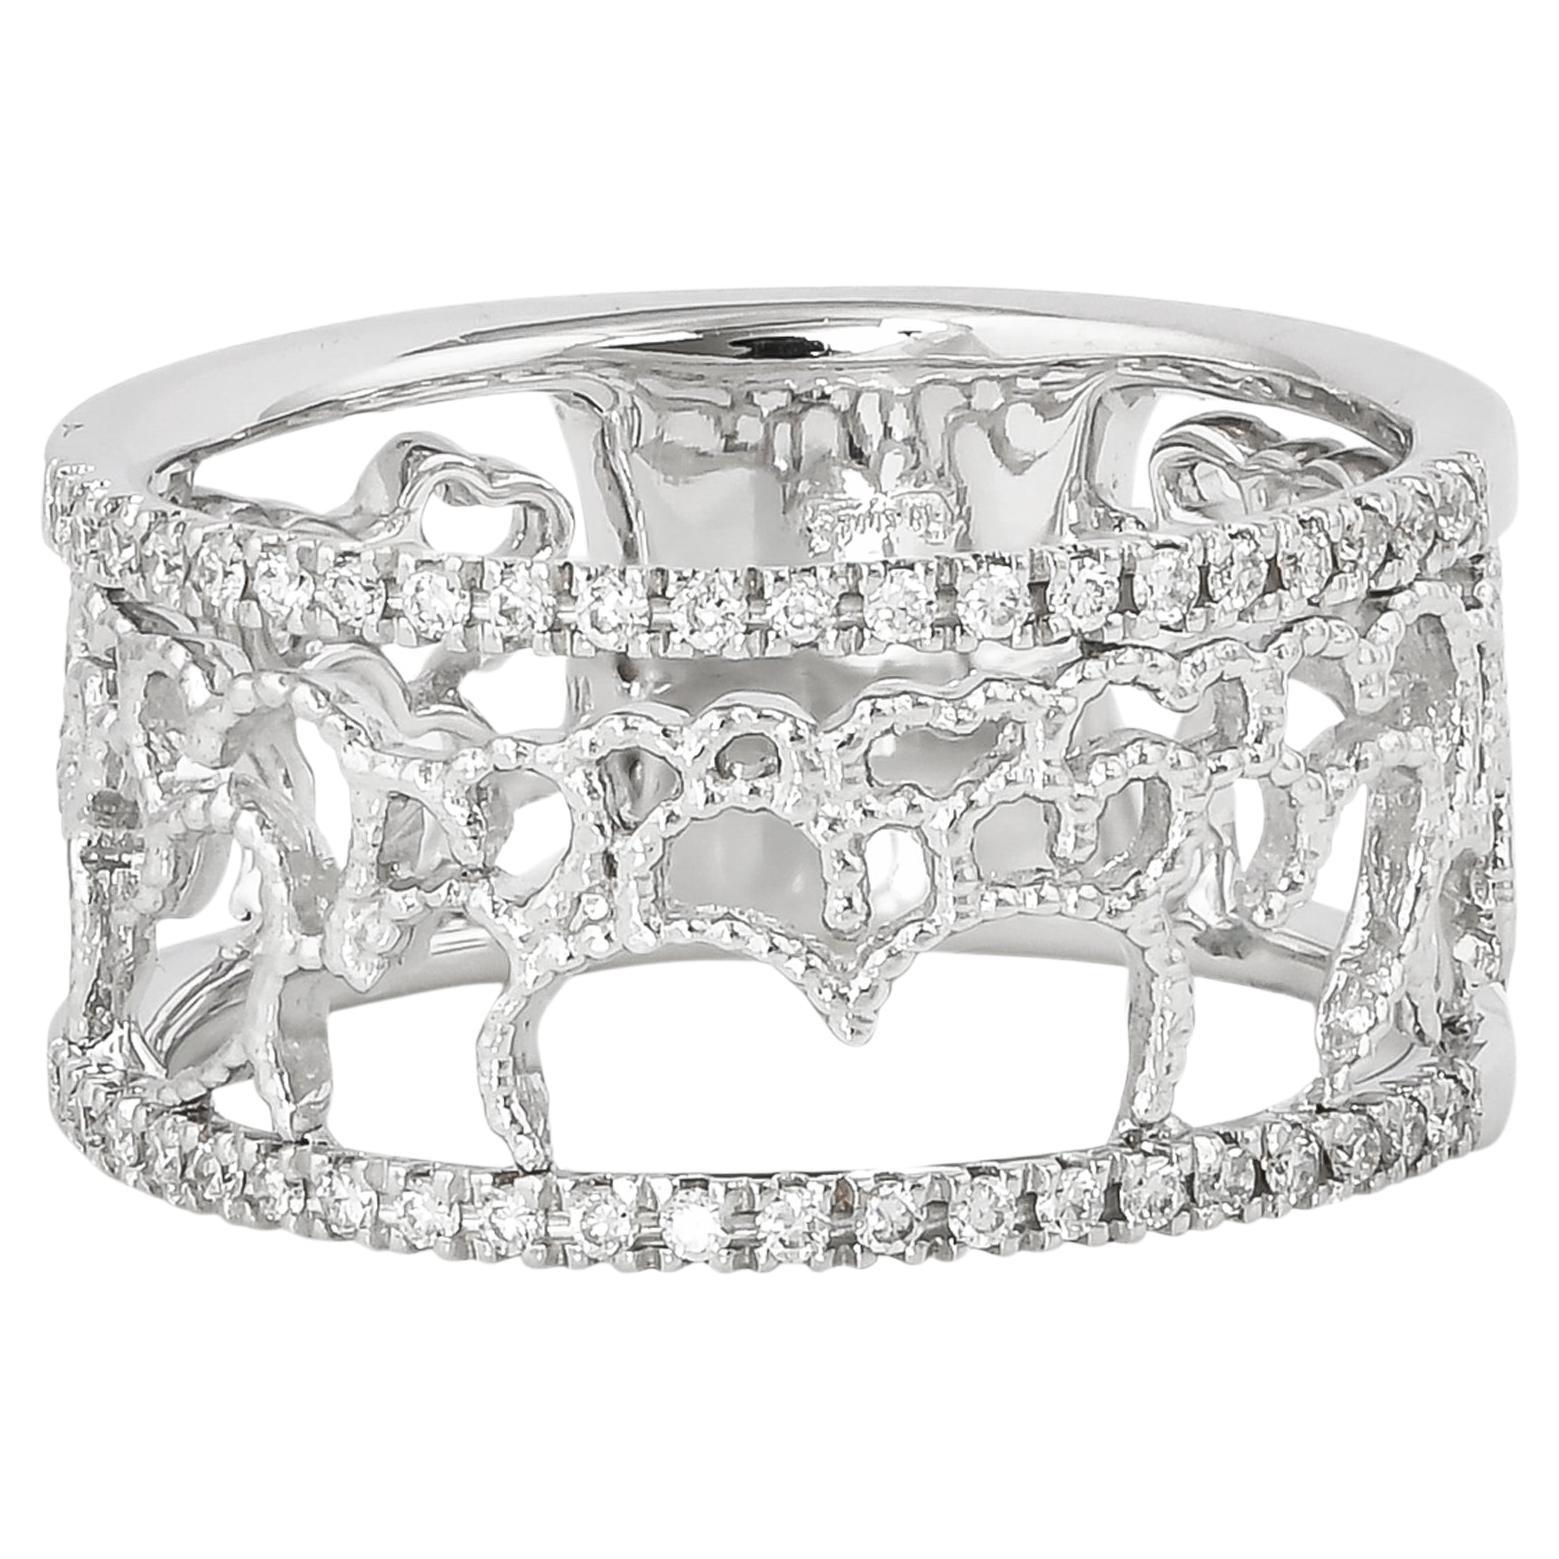 0.175 Carat Diamond Ring in 18 Karat White Gold For Sale